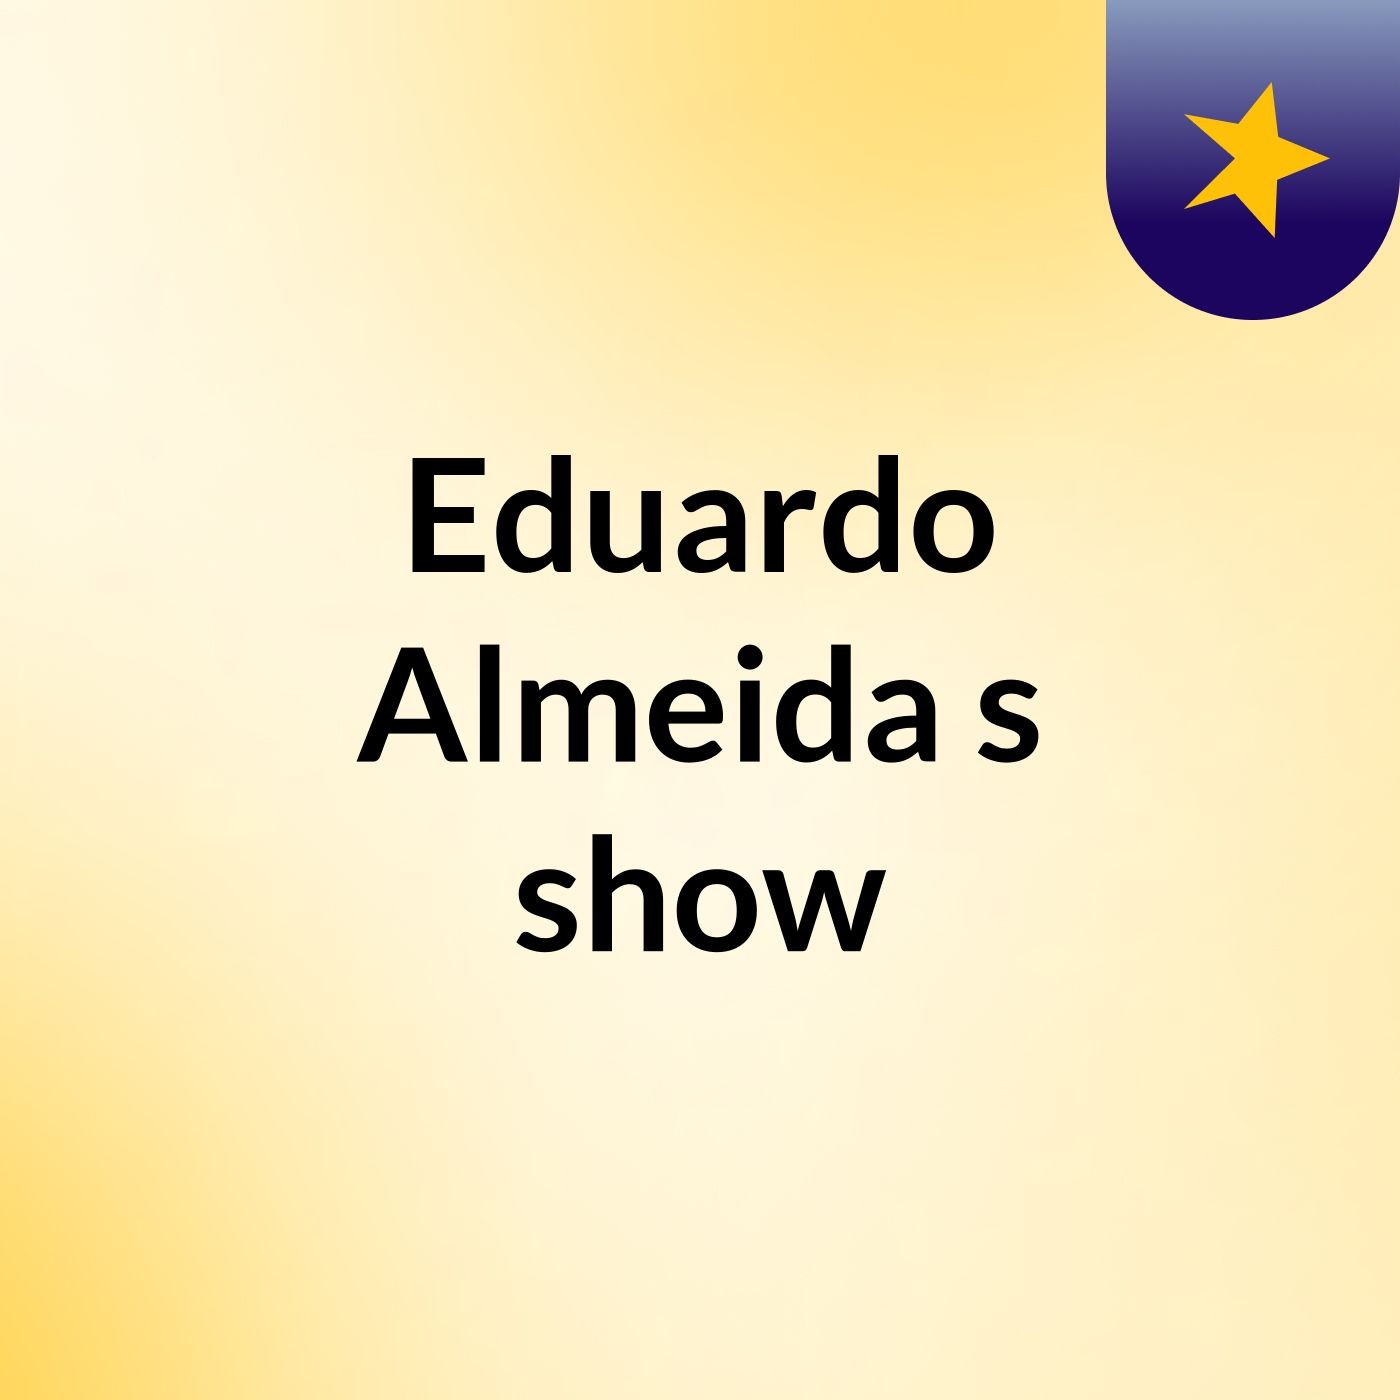 Eduardo Almeida's show